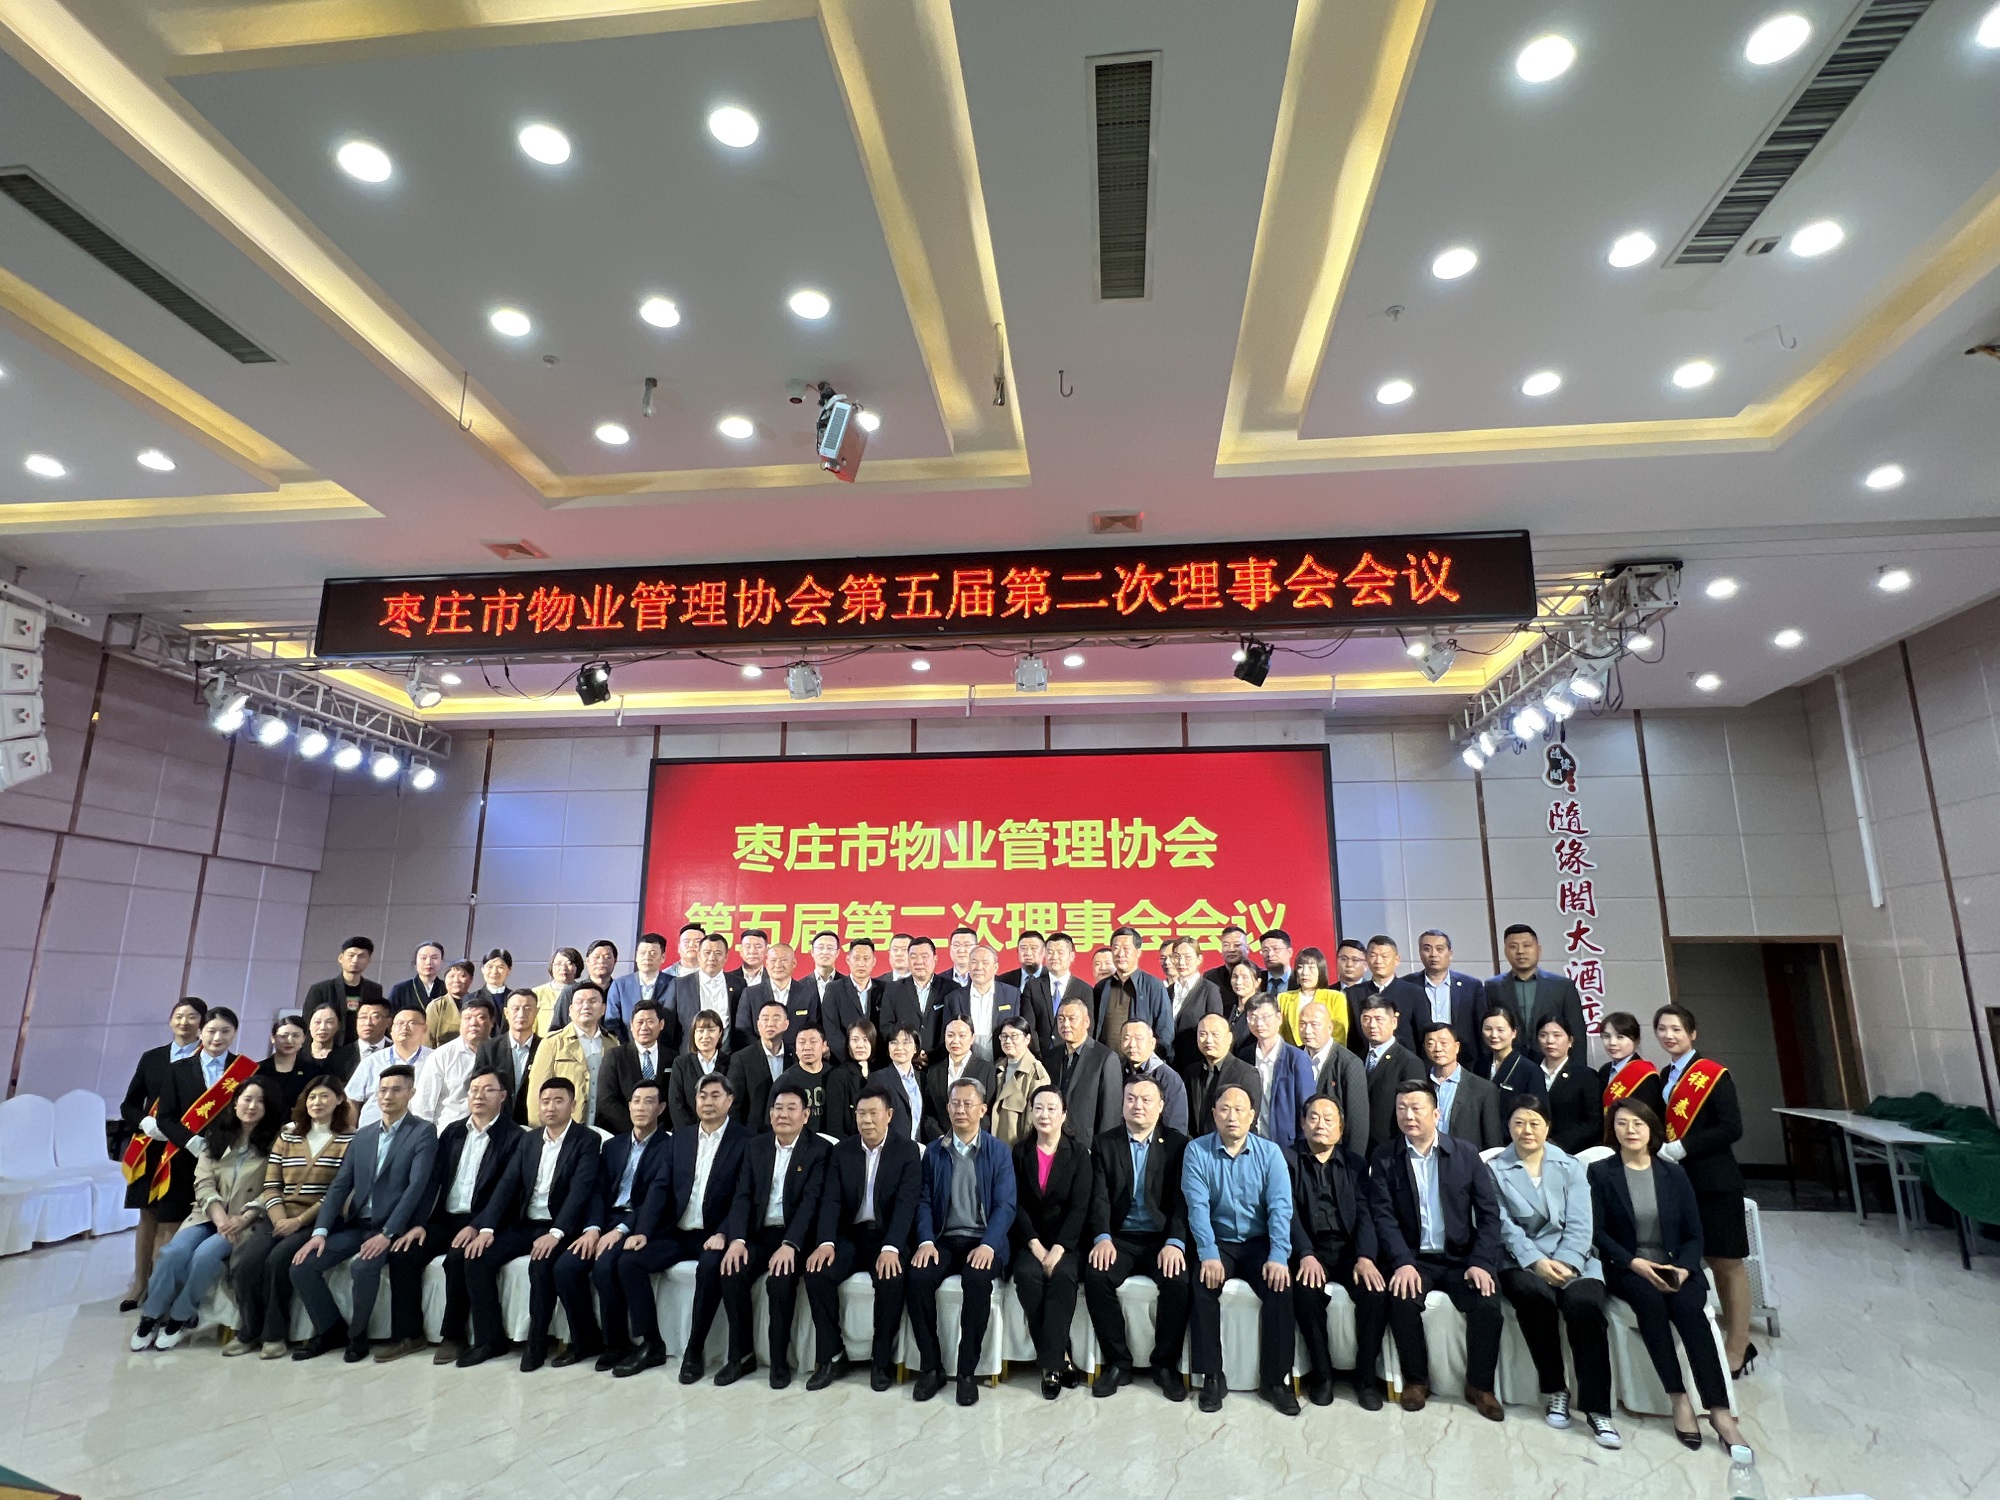 w88win物业枣庄分公司乐成晋升为枣庄市物业治理行业协会副会长单位